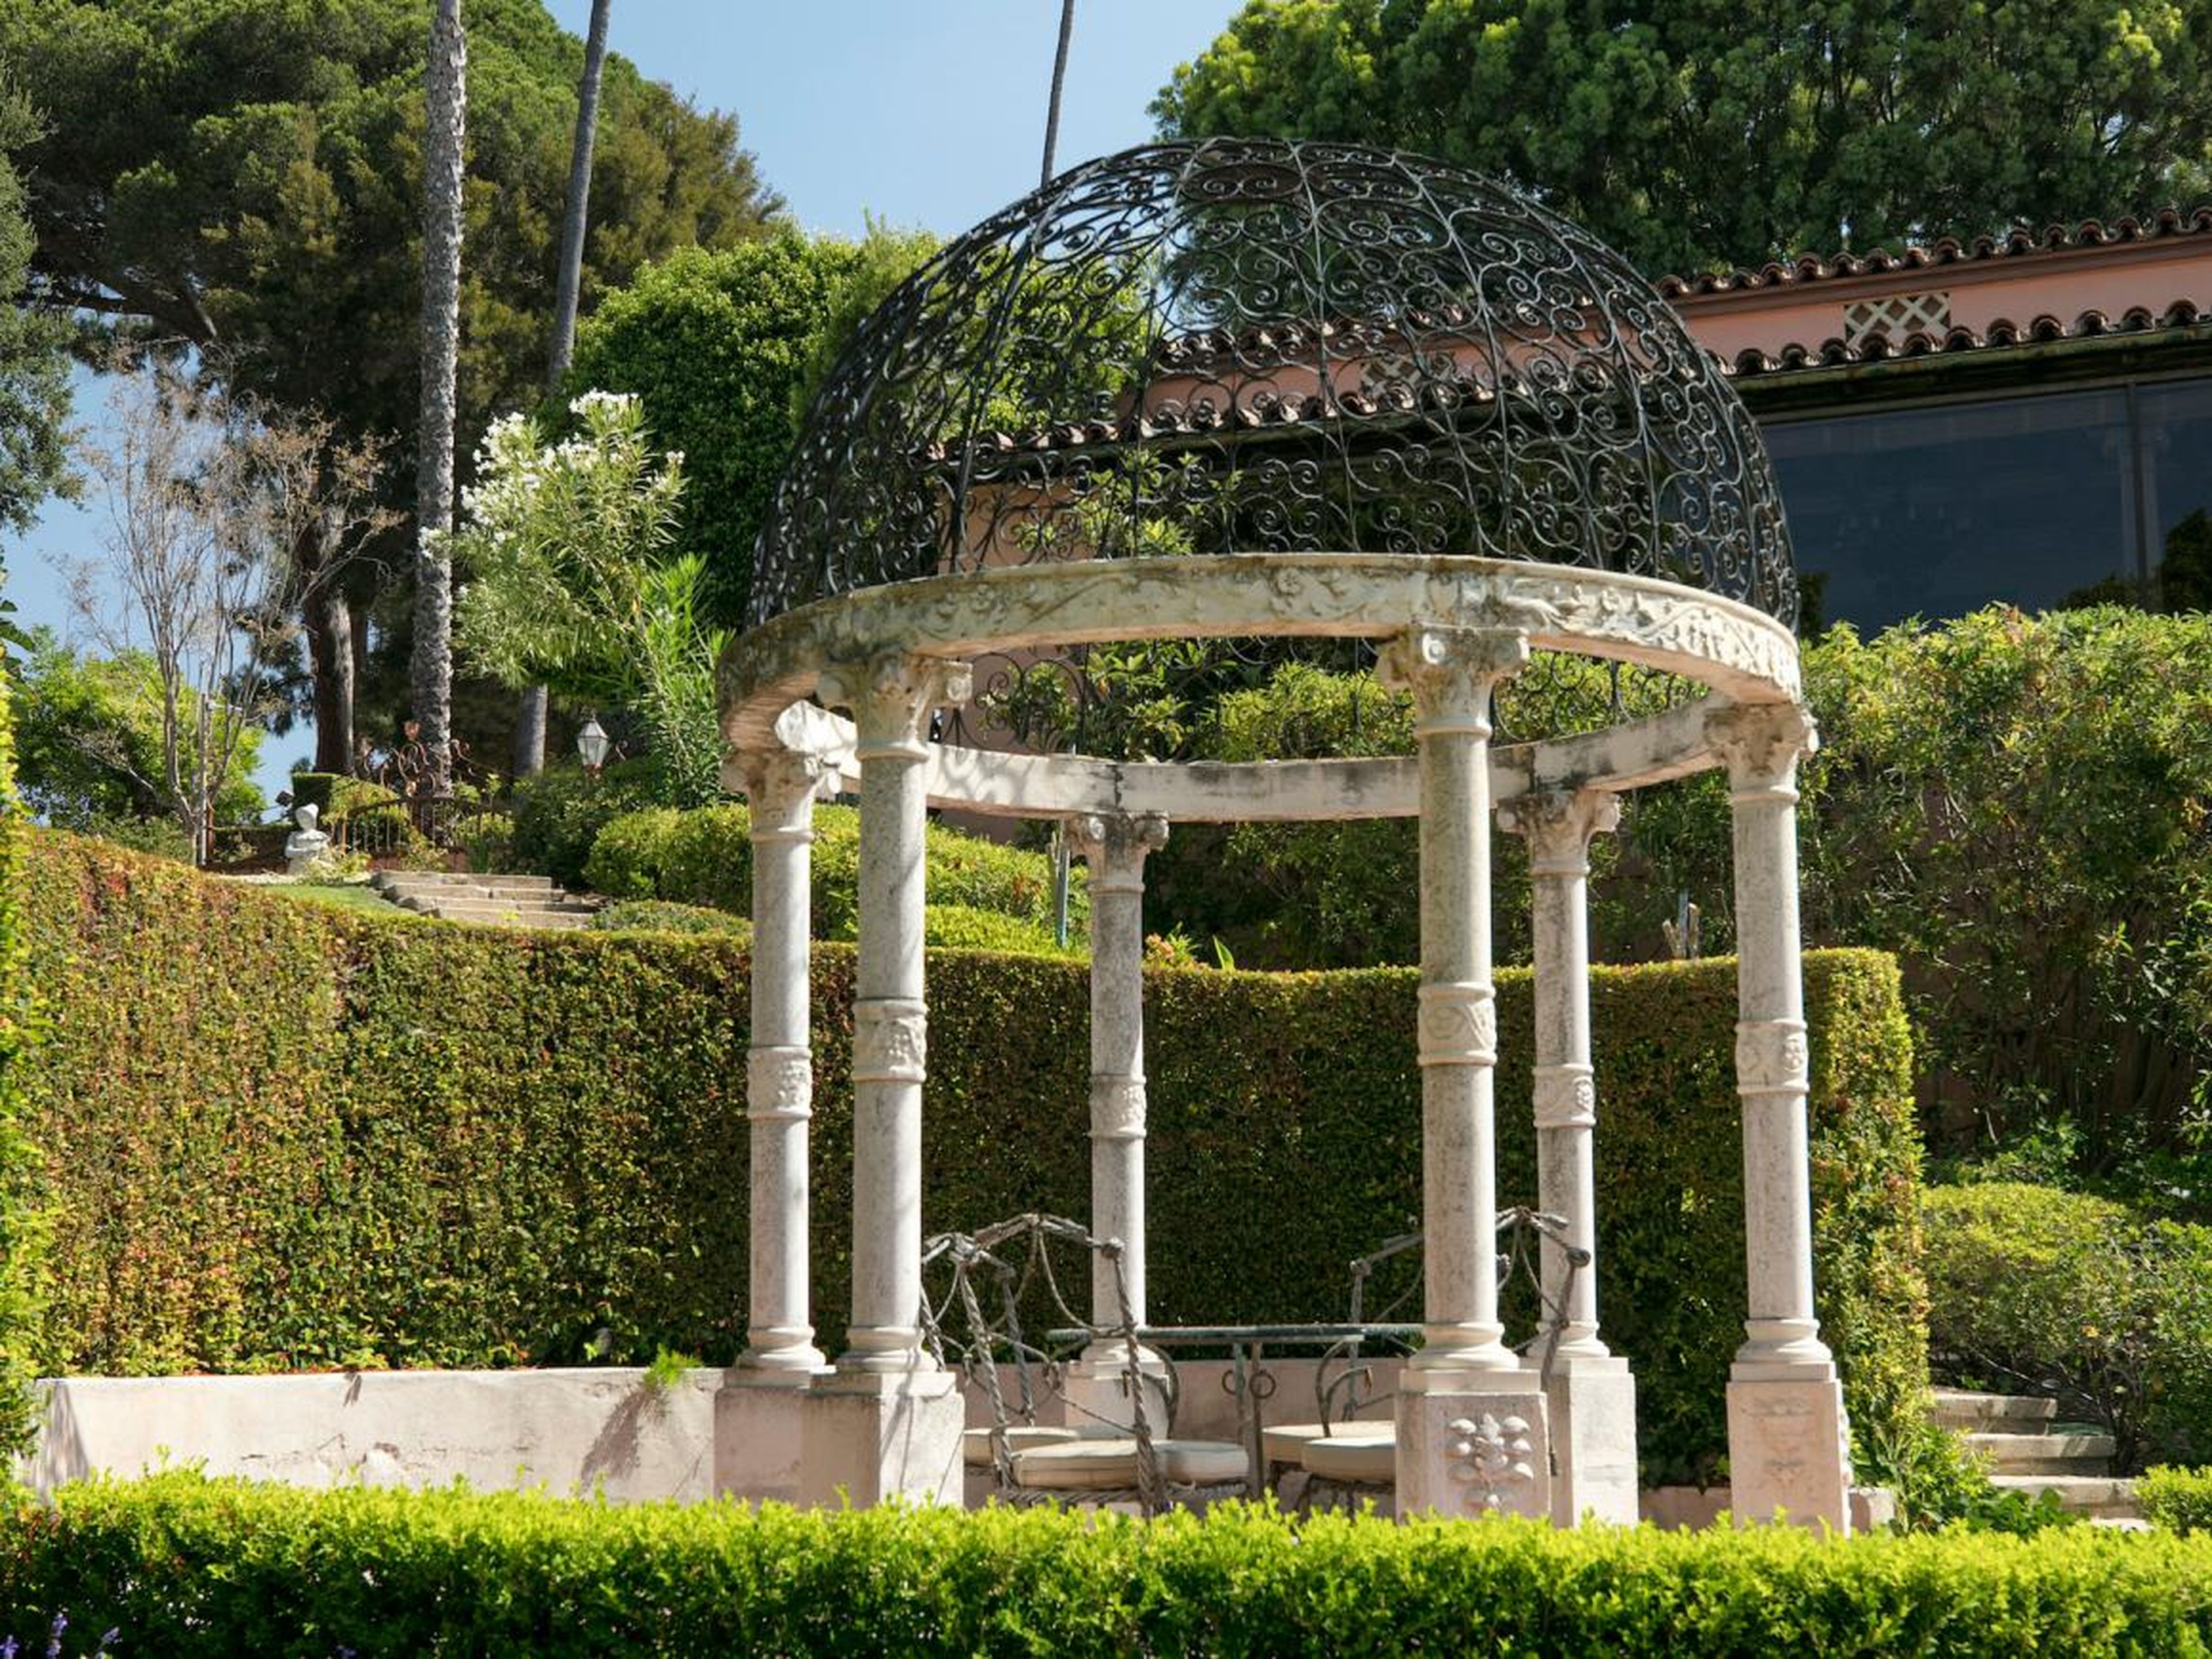 Landscape architect Paul Thiene designed the gardens.